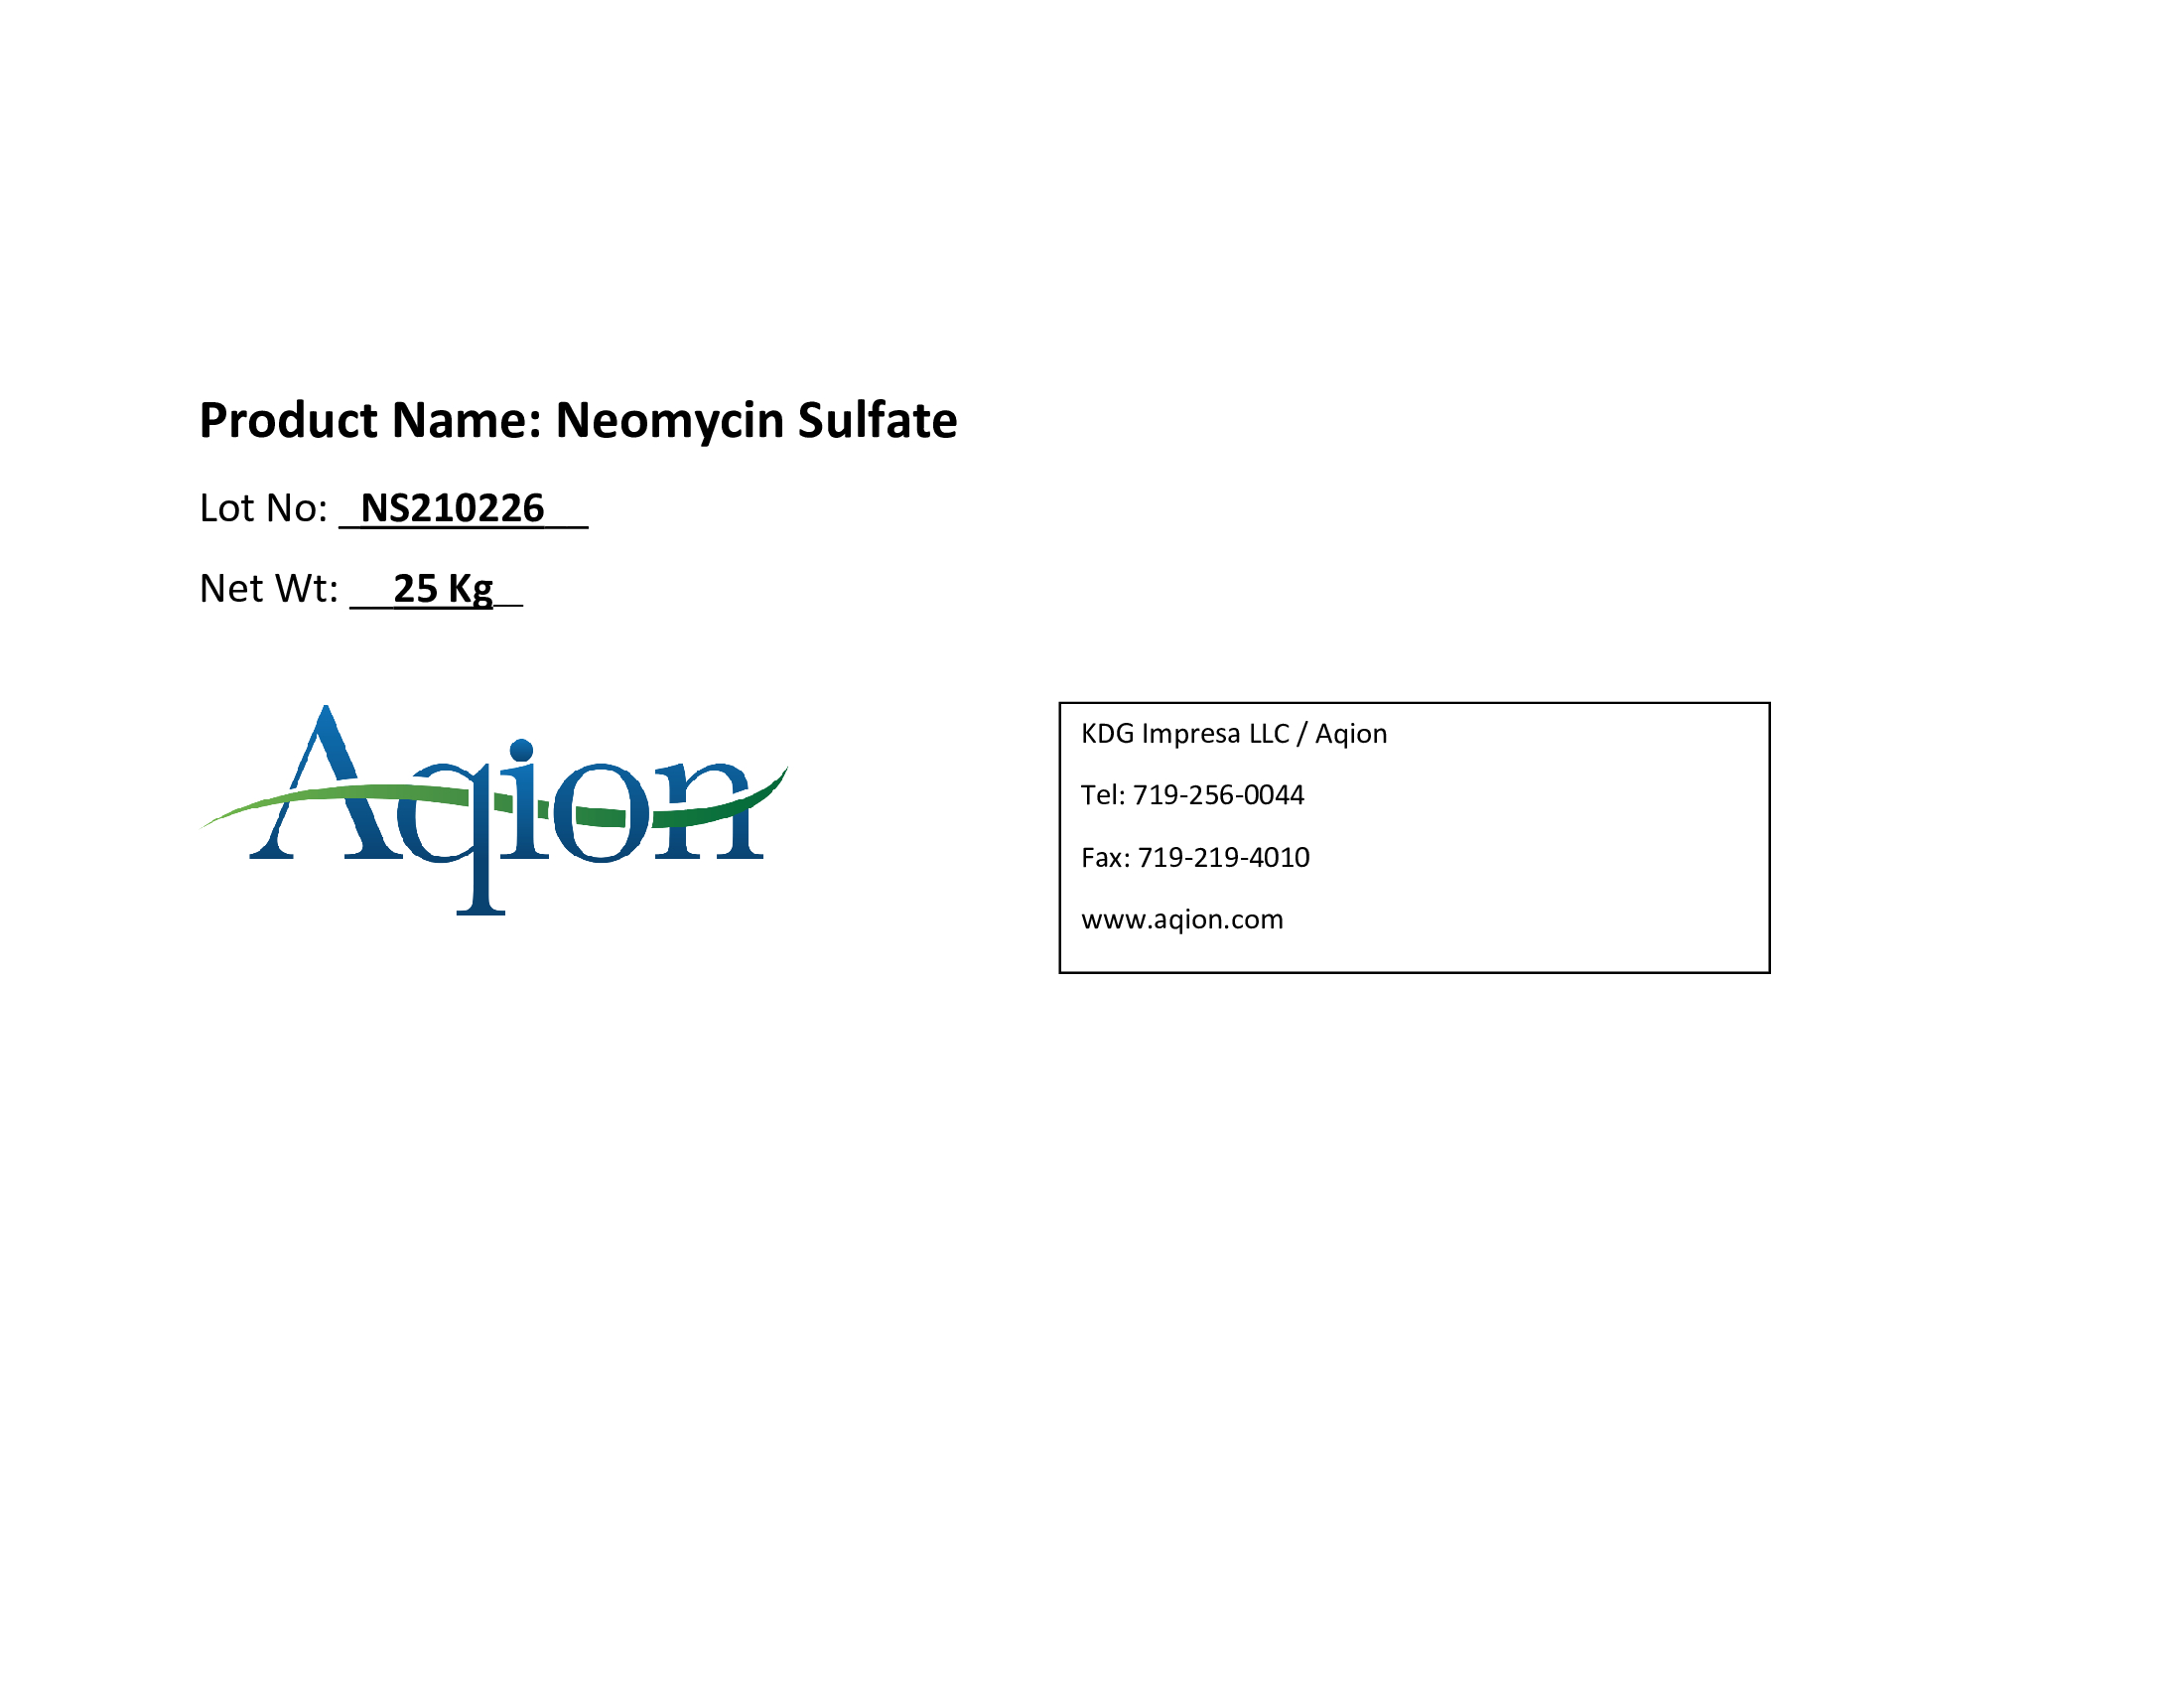 Neomycin Sulfate Bulk Label